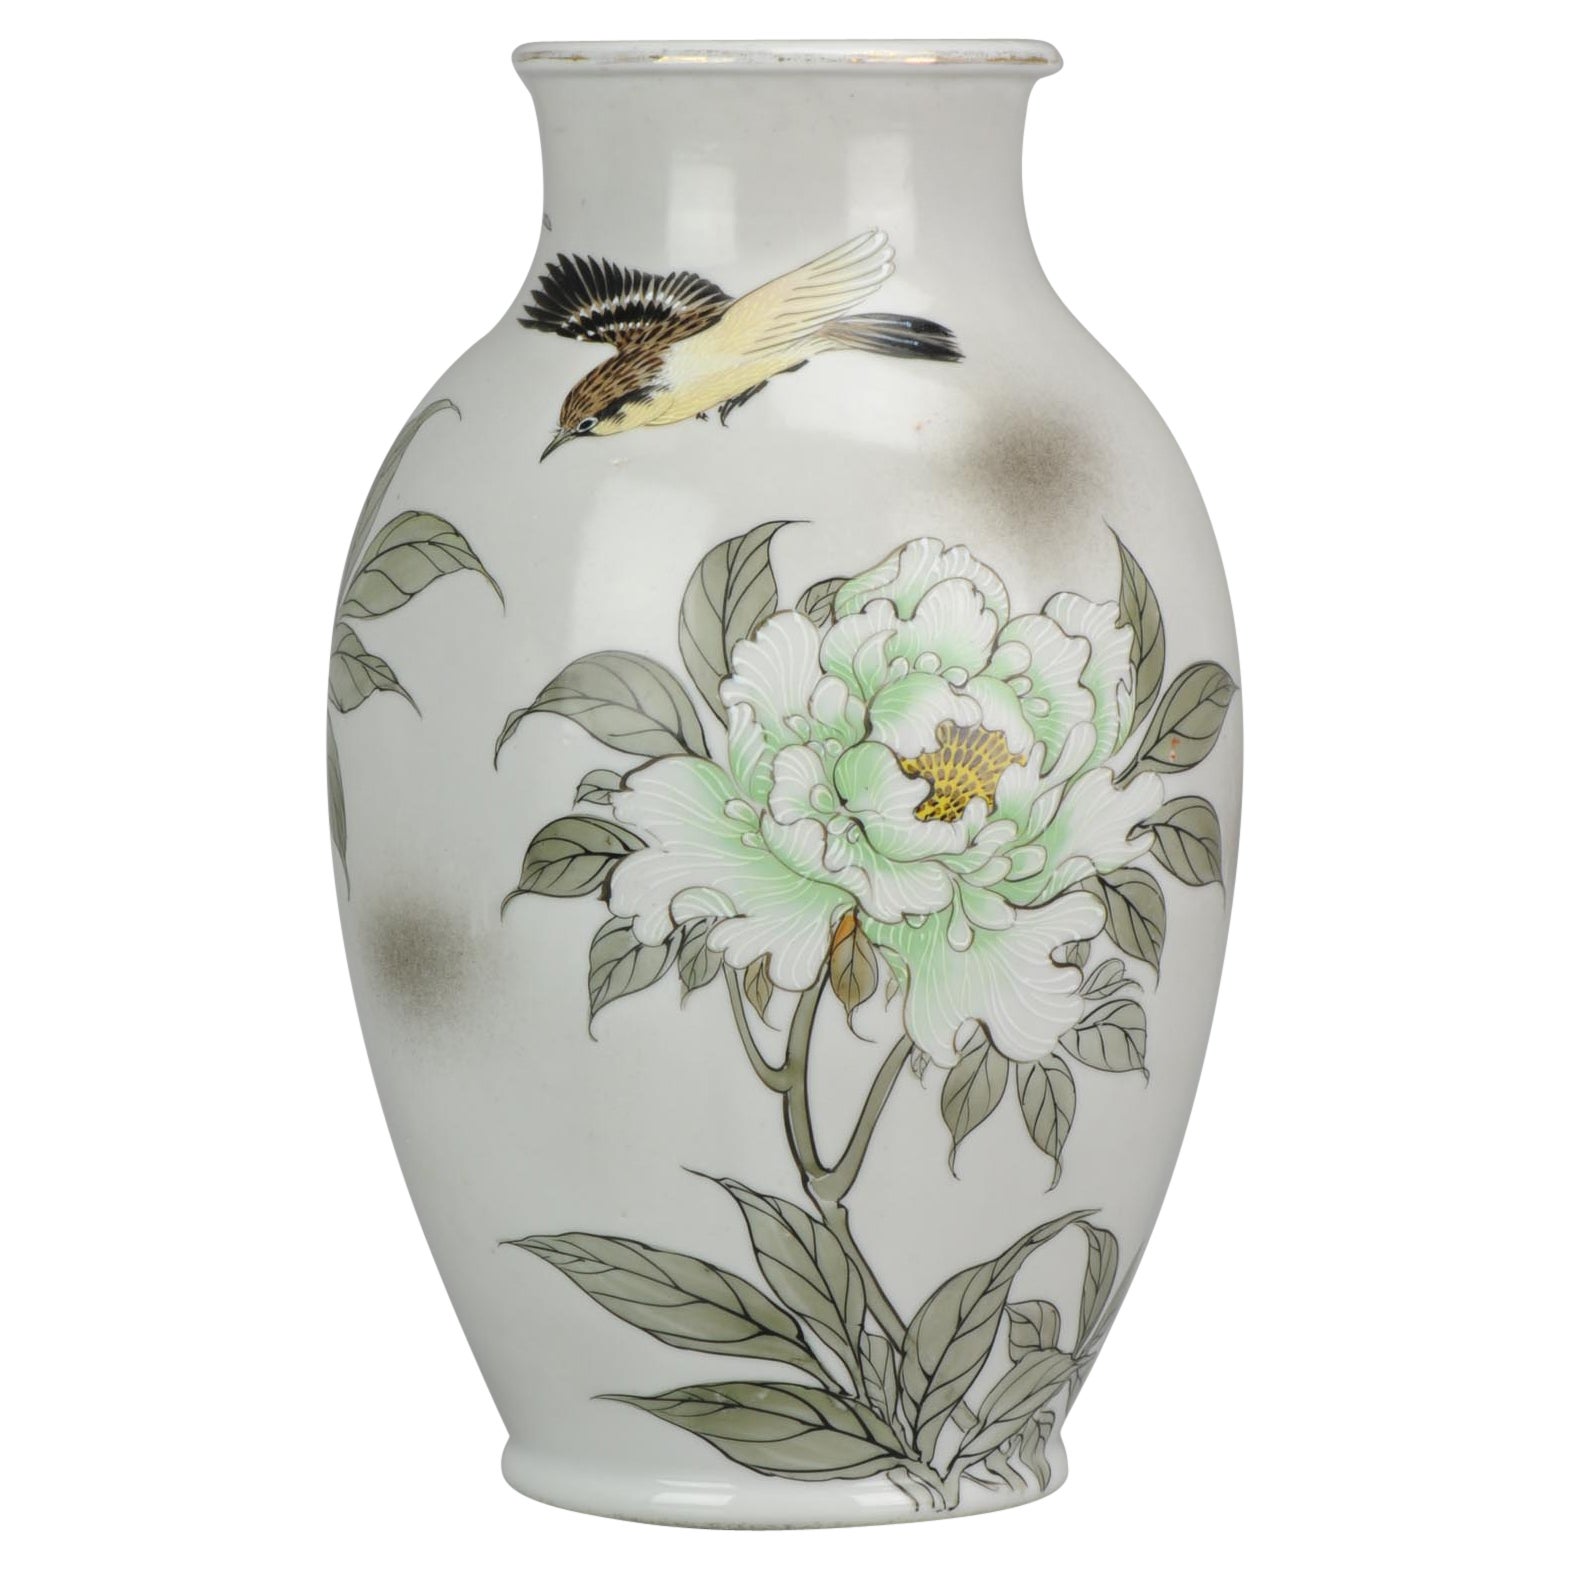 Japanische Vase Arita Taisho / Showa Periode Japan Porzellan, um 1930